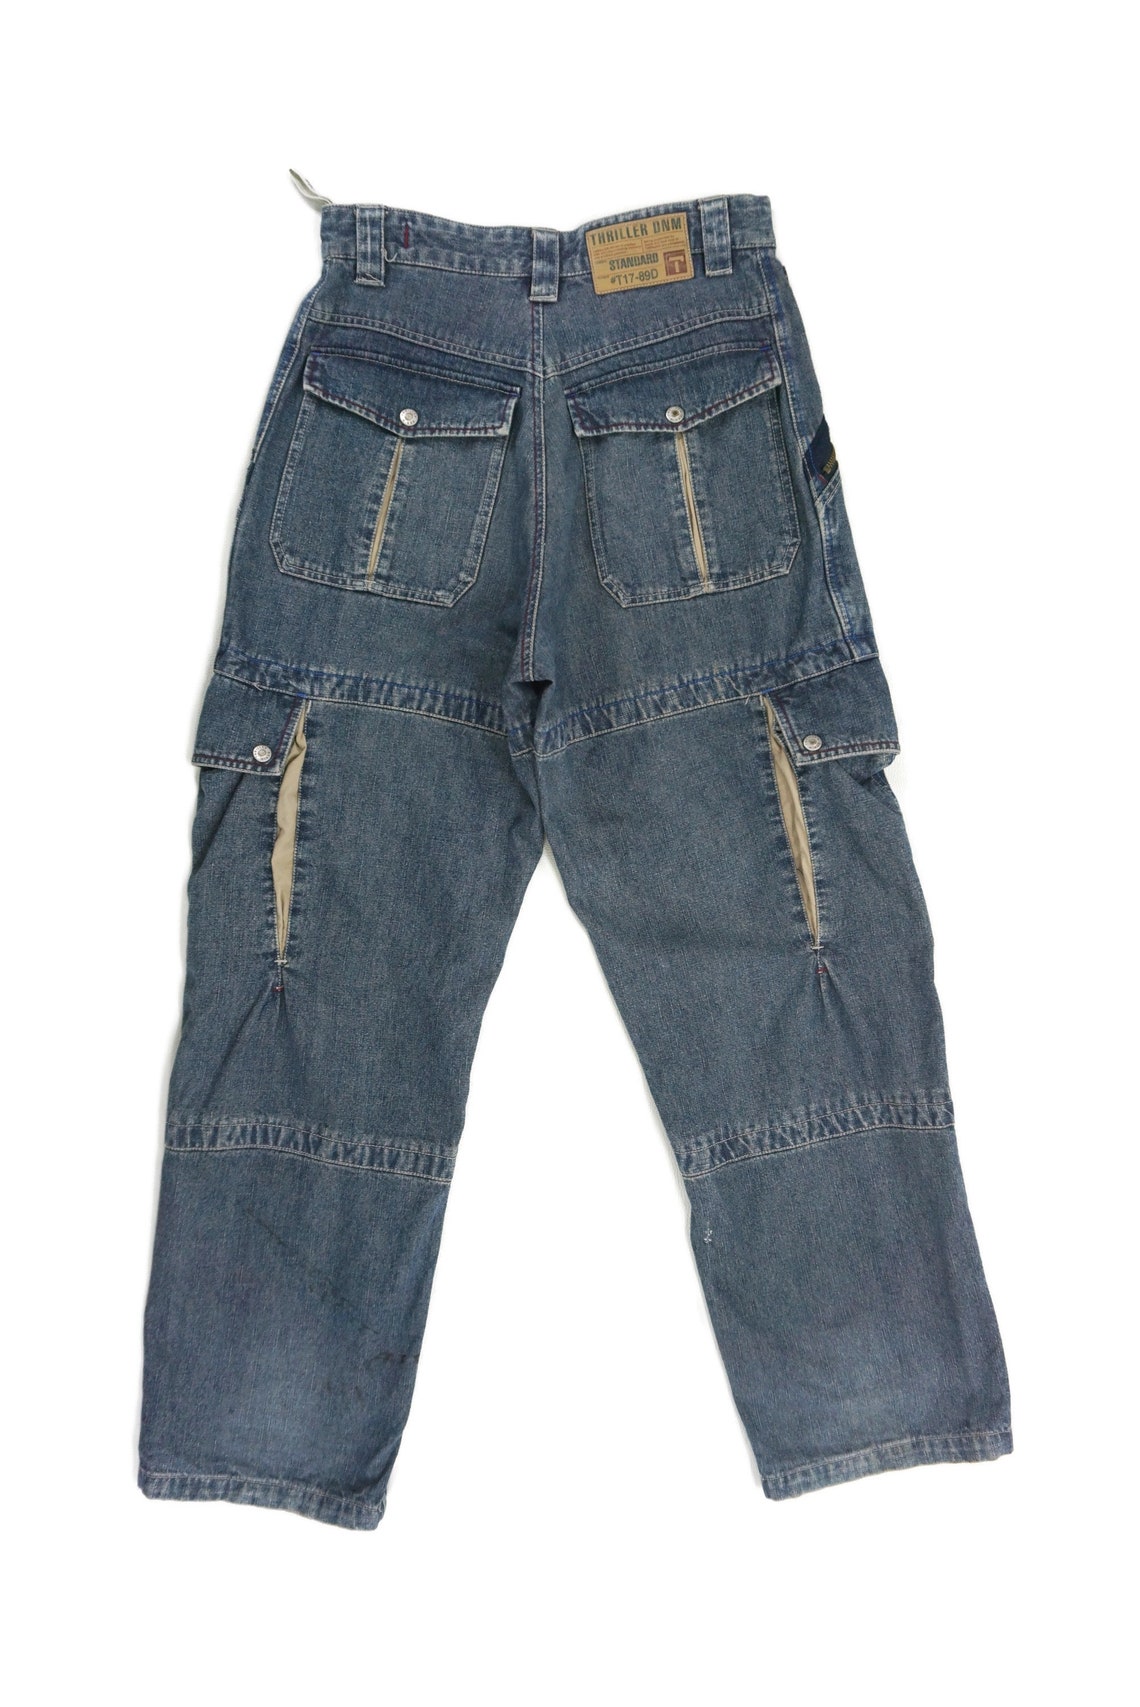 Thriller Jeans Size 76/80 W30xL32 Vintage Thriller Denim Jeans | Etsy